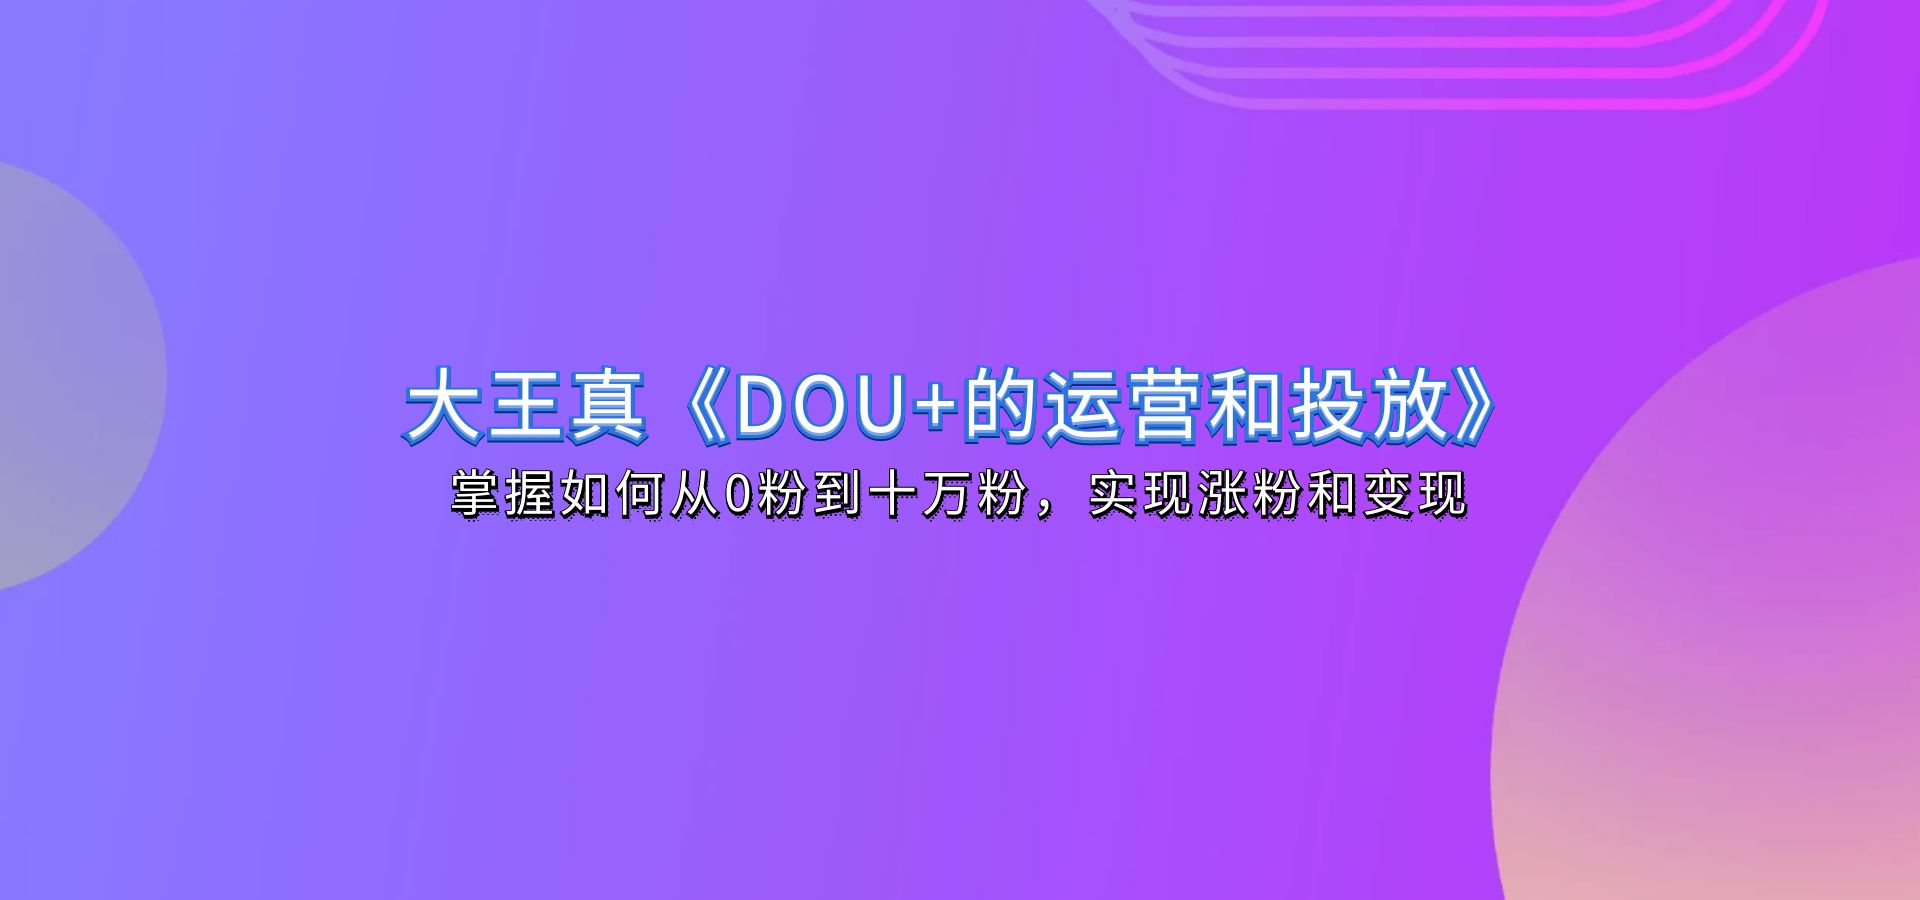 大王真《DOU+的运营和投放》